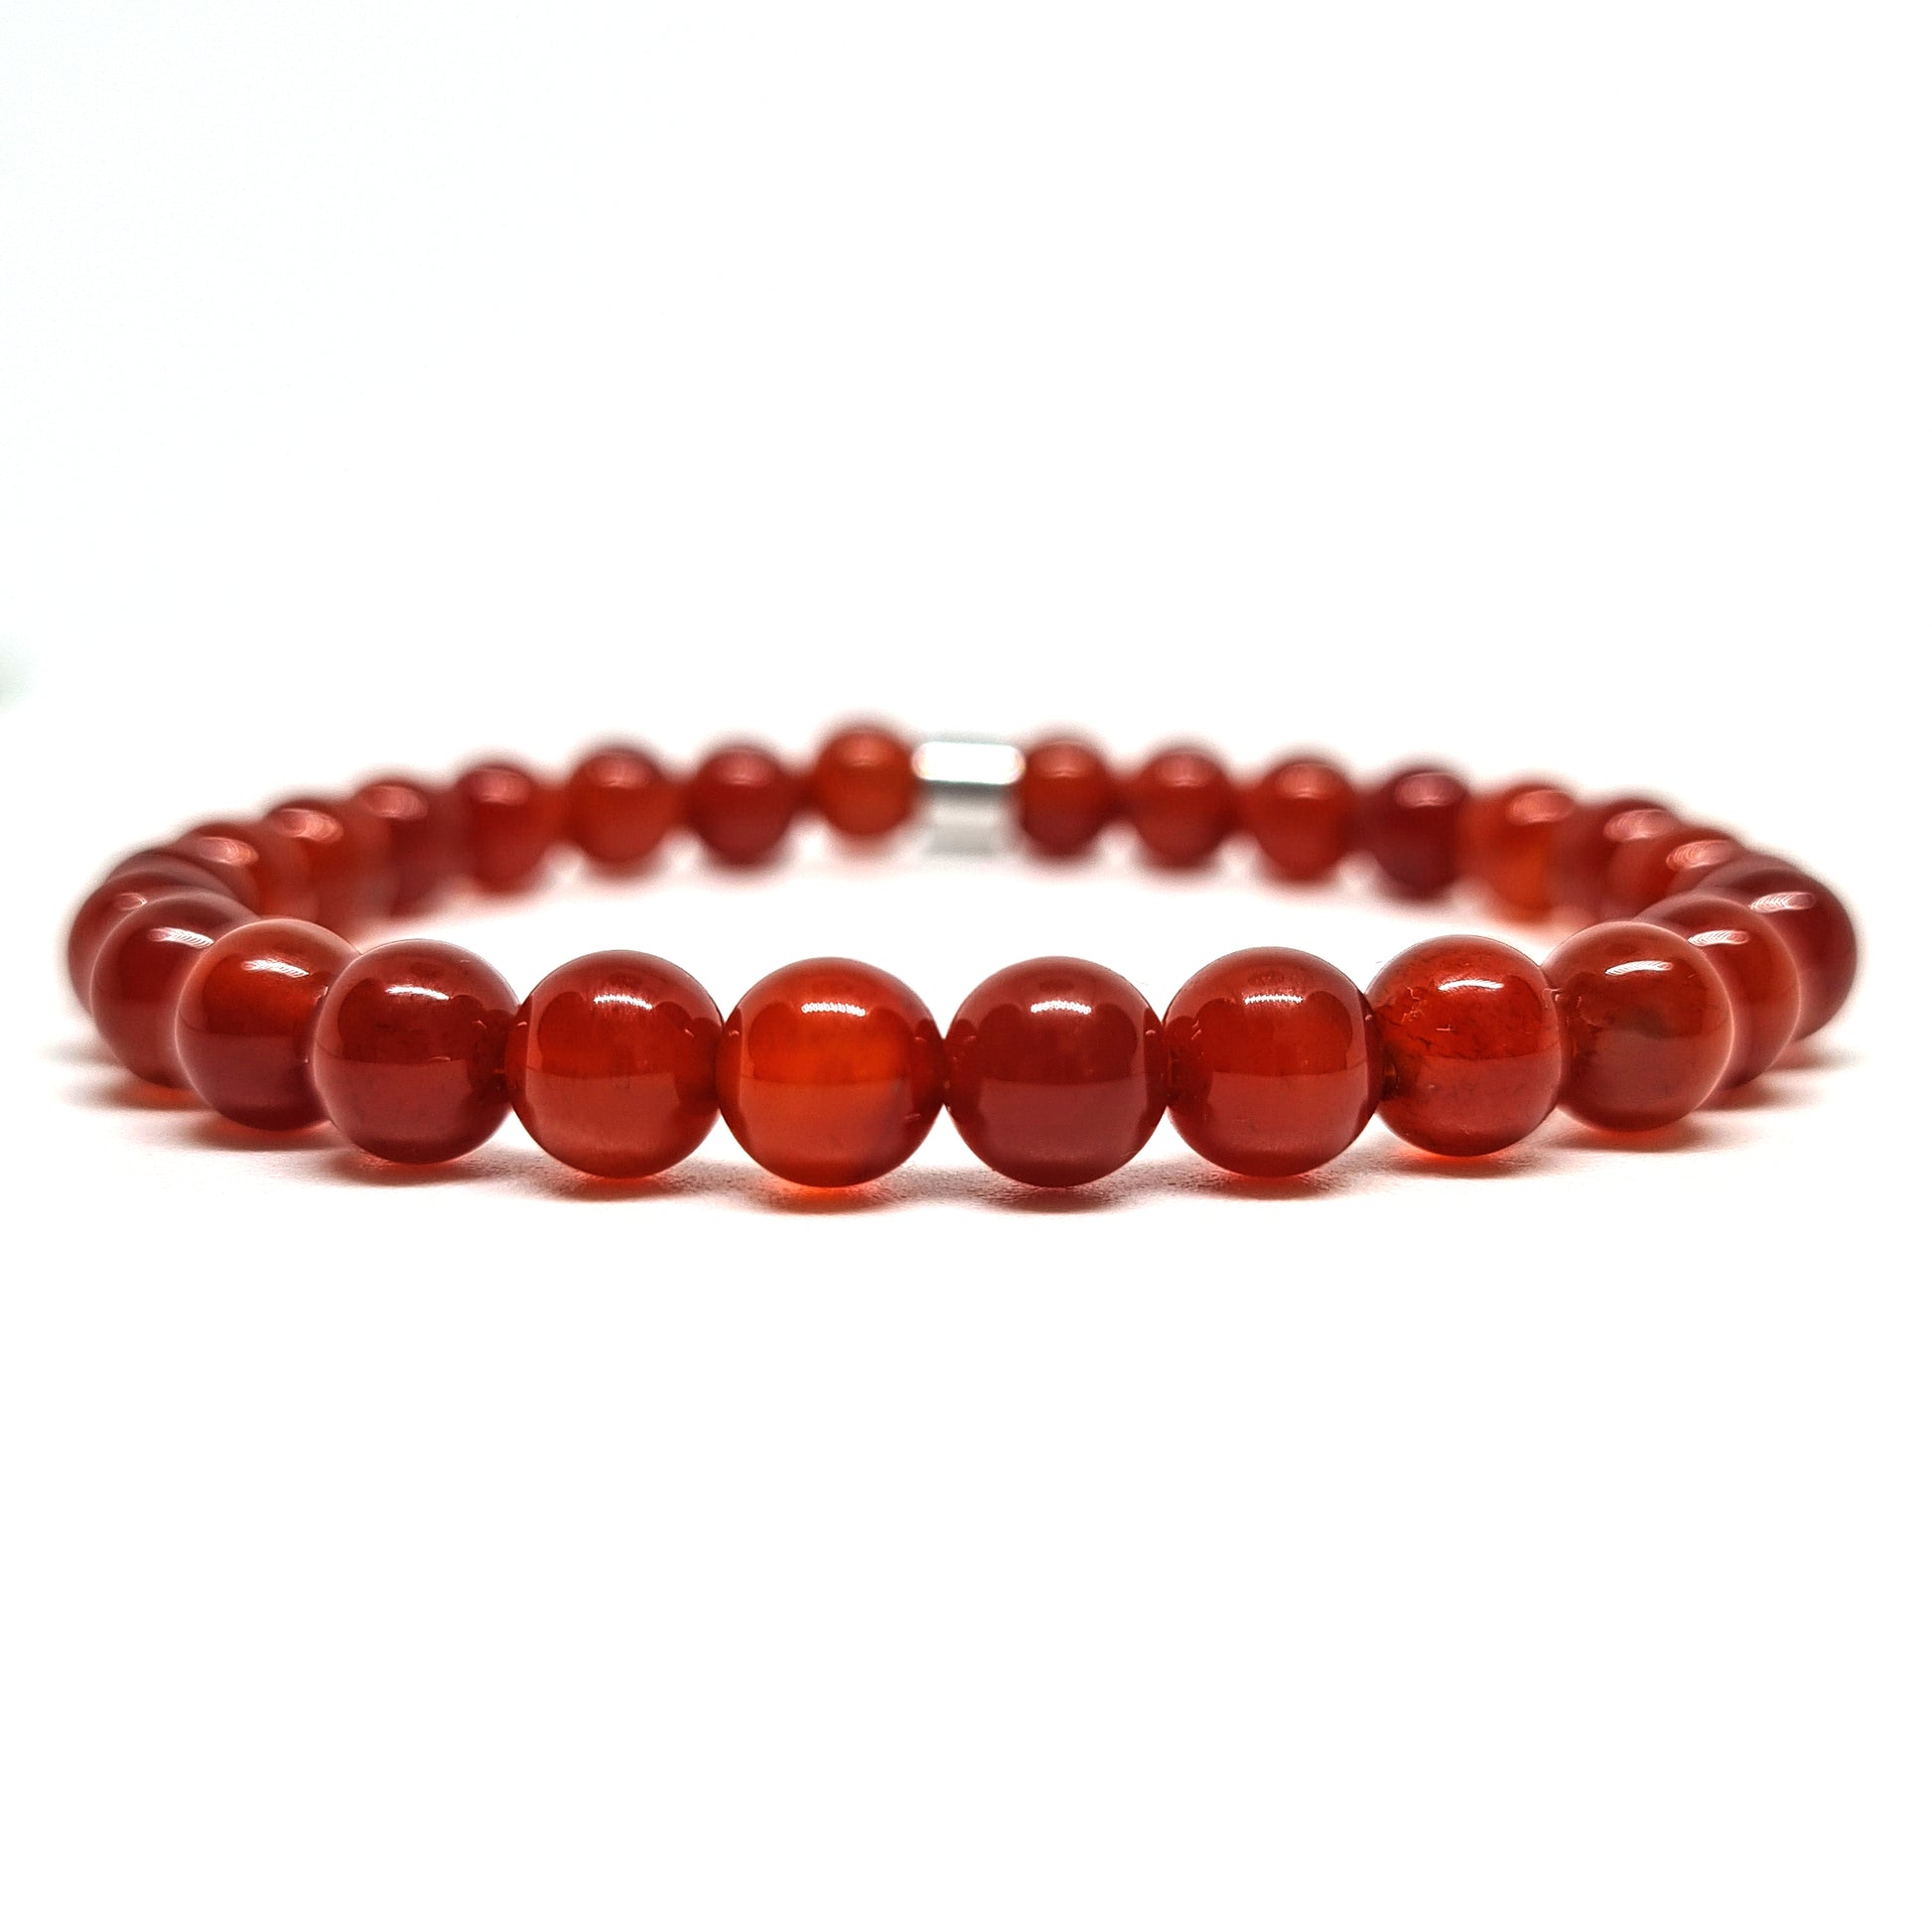 Red Carnelian gemstone bracelet with steel accessory